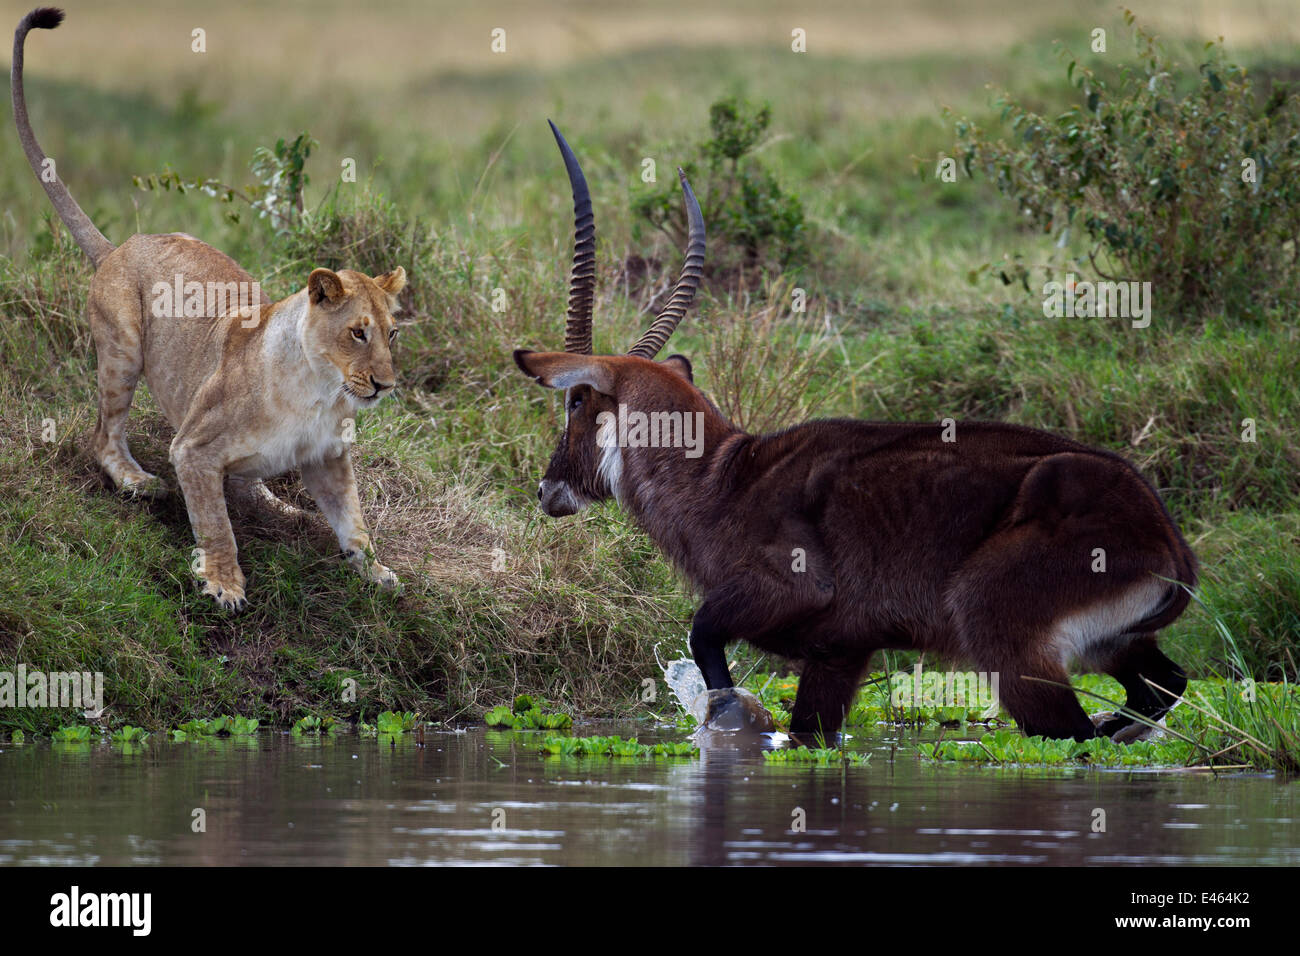 Cobe Defassa Kobus ellipsiprymnus defassa (mâle) debout dans un lac entouré d'une troupe de lions d'Afrique (Panthera leo), Masai Mara National Reserve, Kenya, séquence Septembre 7/11 Banque D'Images